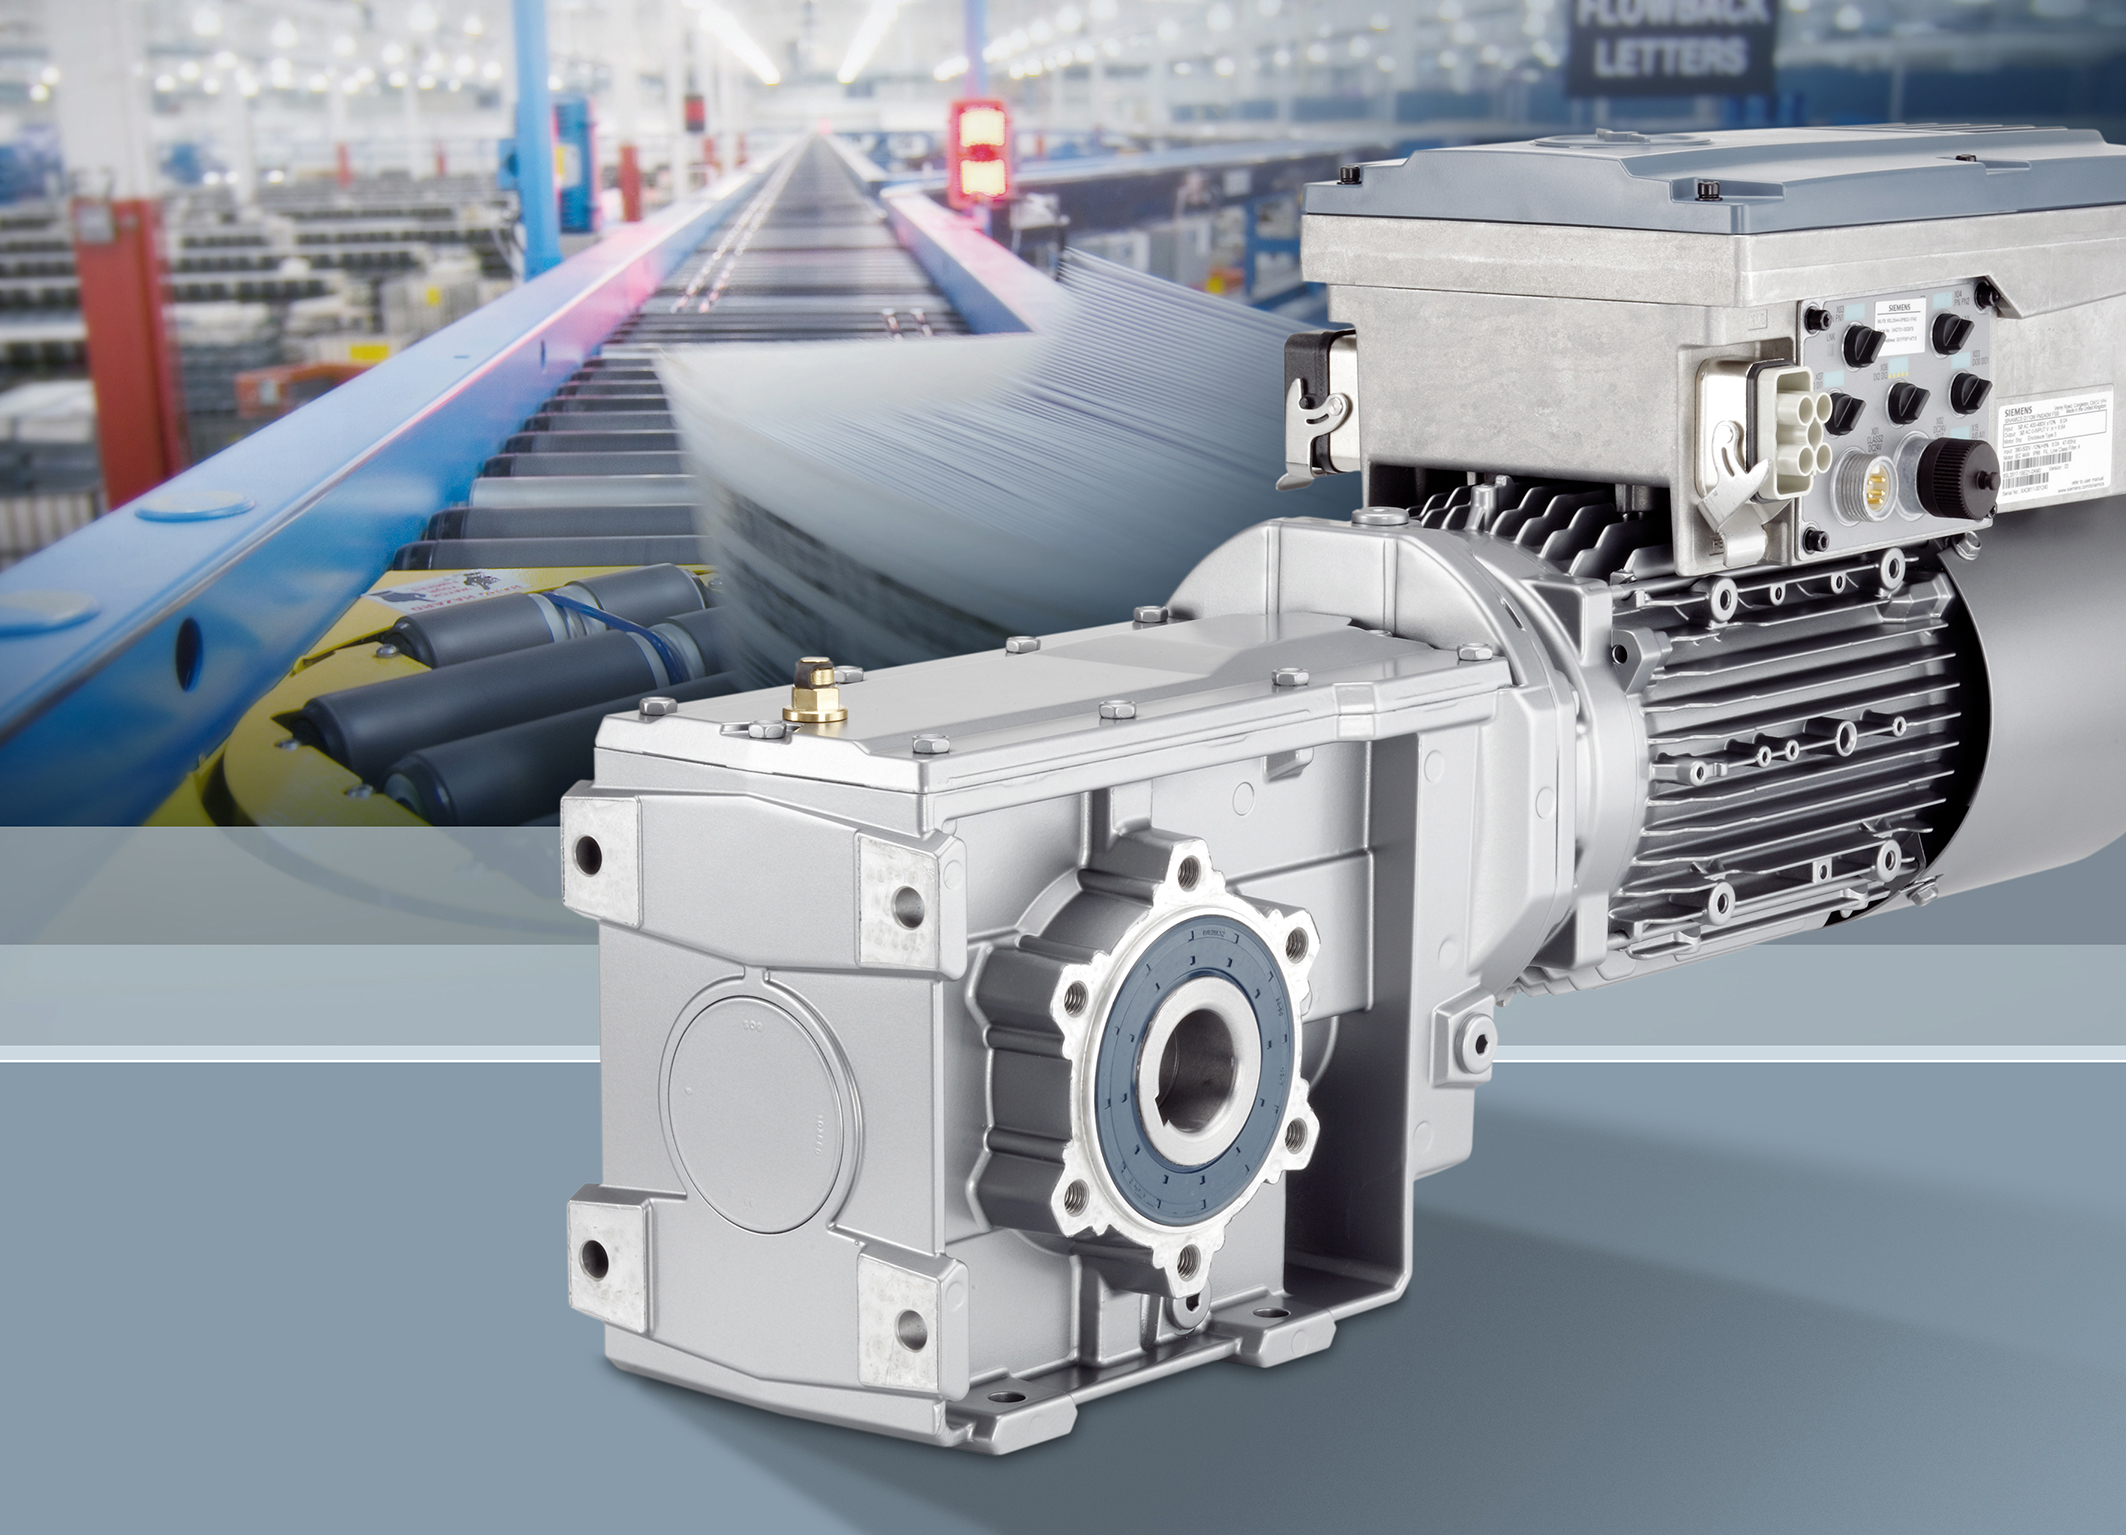 Siemens präsentiert Simogear-Getriebemotoren mit integriertem Frequenzumrichter Sinamics G110M. Siemens presents Simogear geared motors with integrated Sinamics G110M frequency inverter.